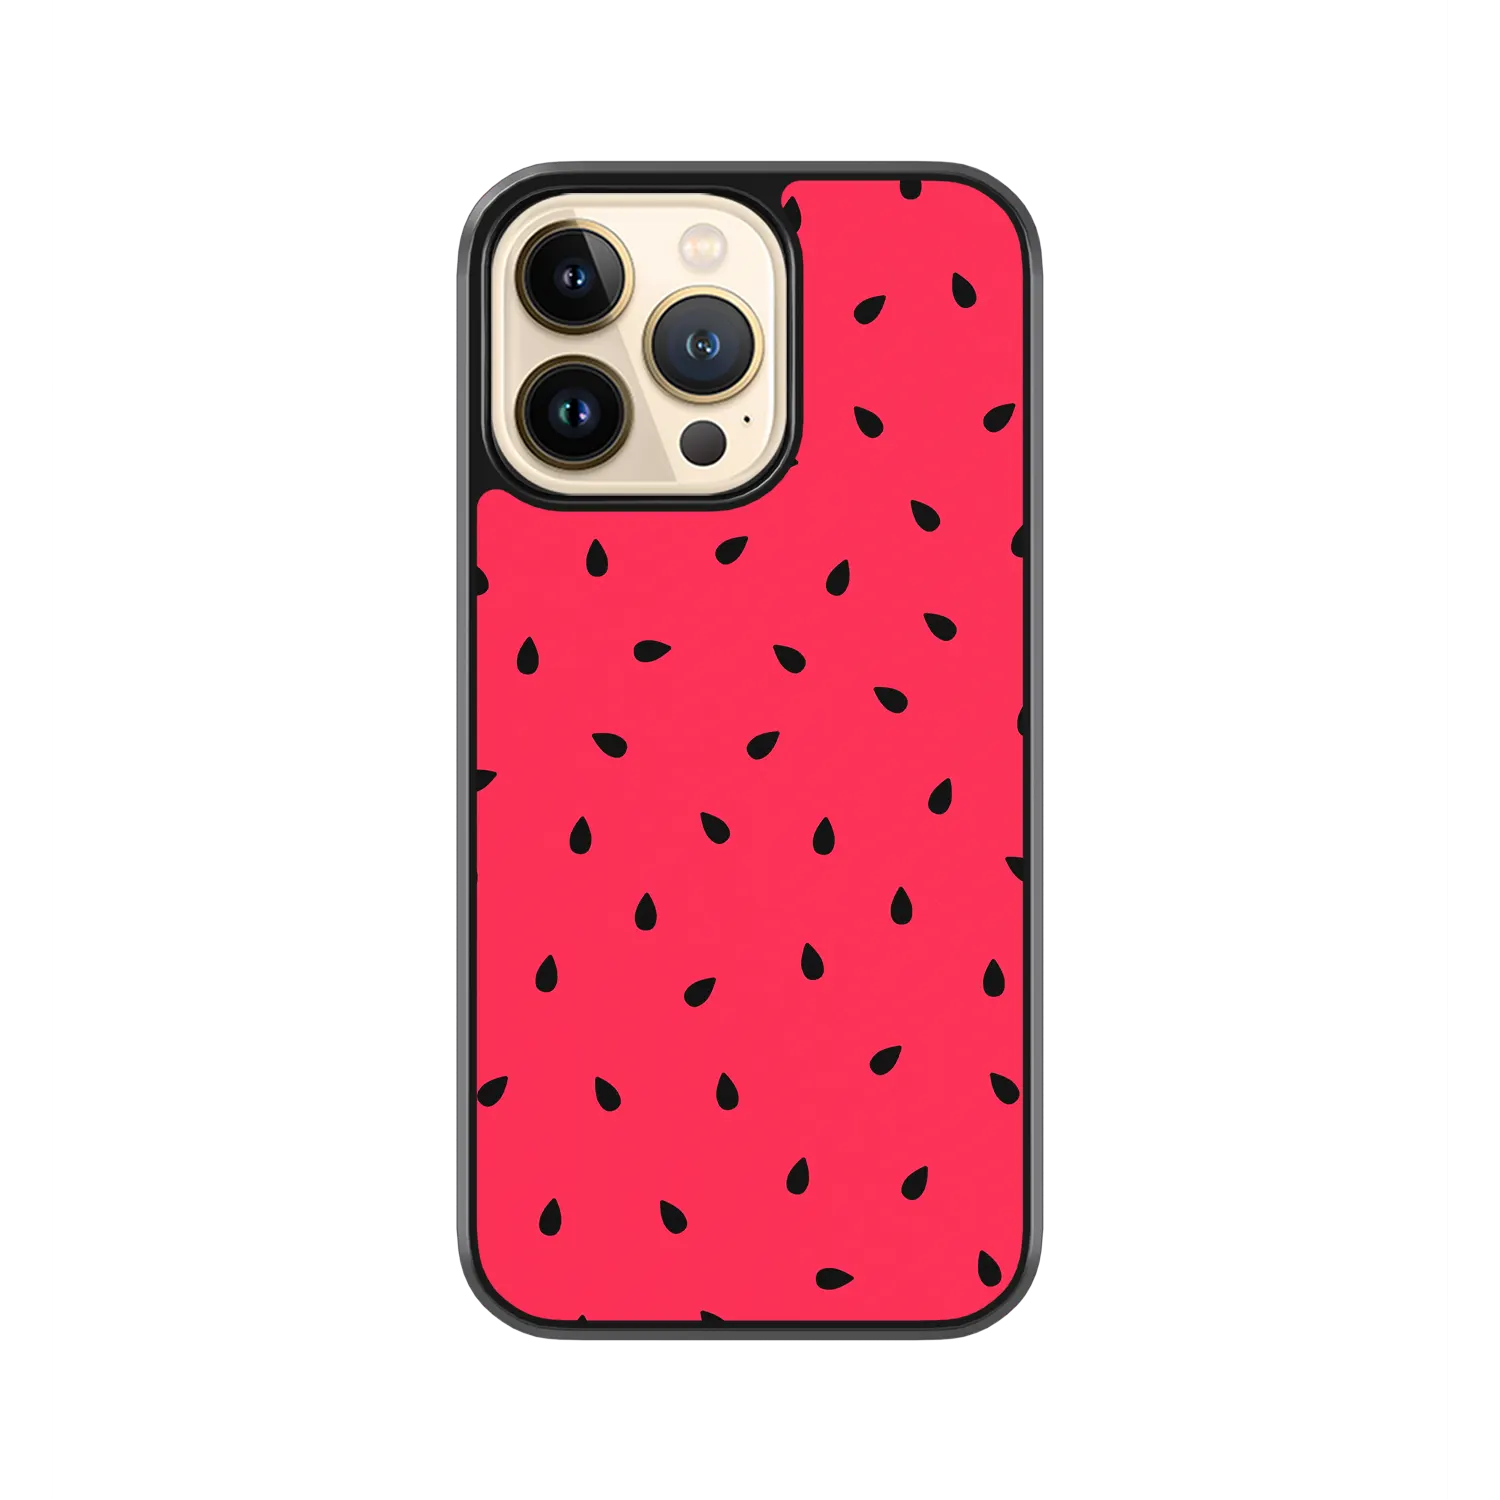 Watermelon Sugar iPhone 12 pro max Case